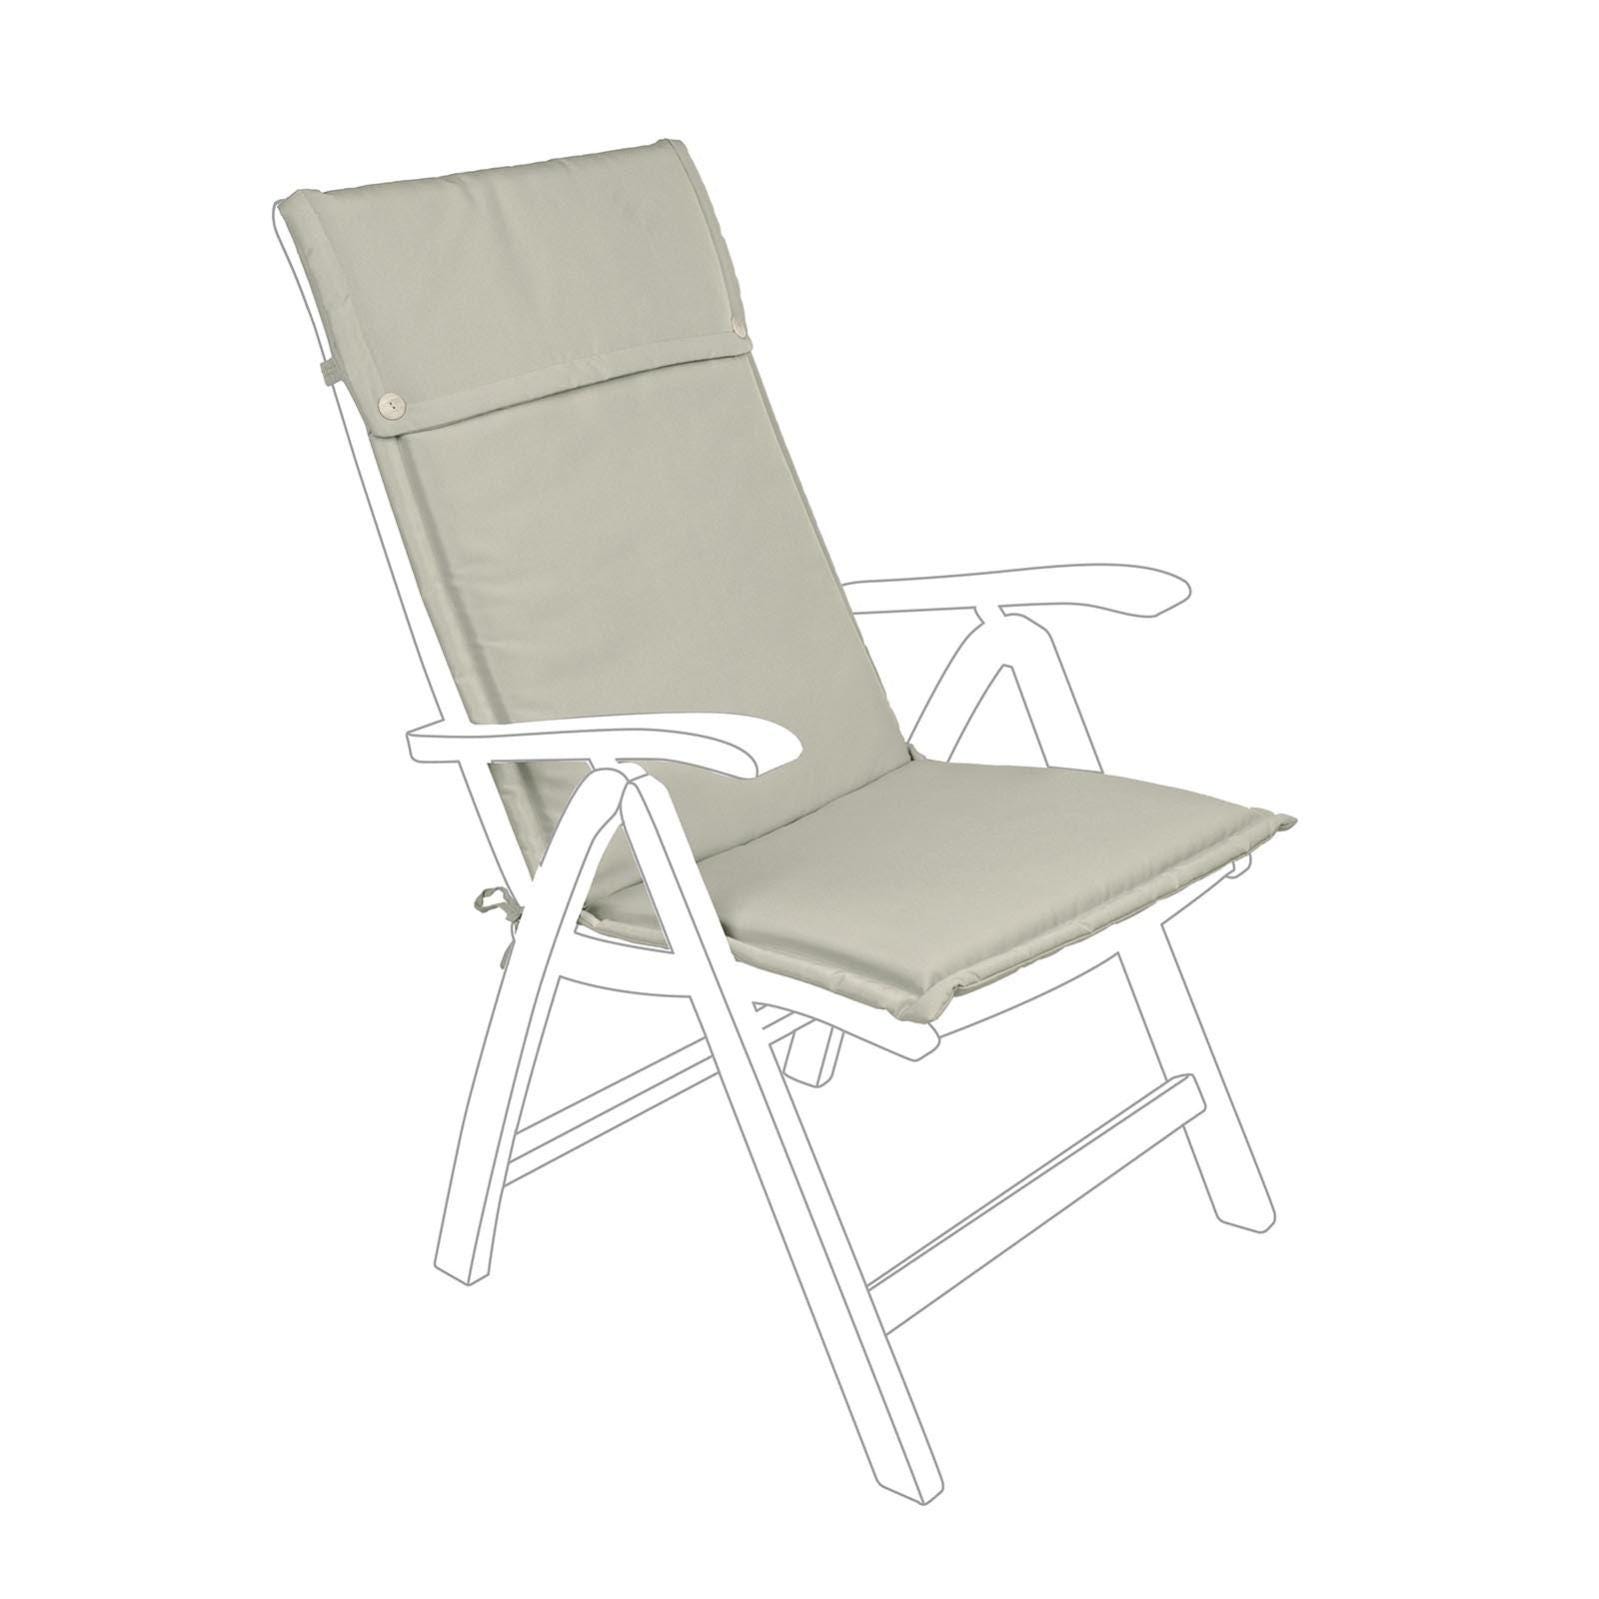 Cuscino per sedia a sdraio con schienale alto idrorepellente per